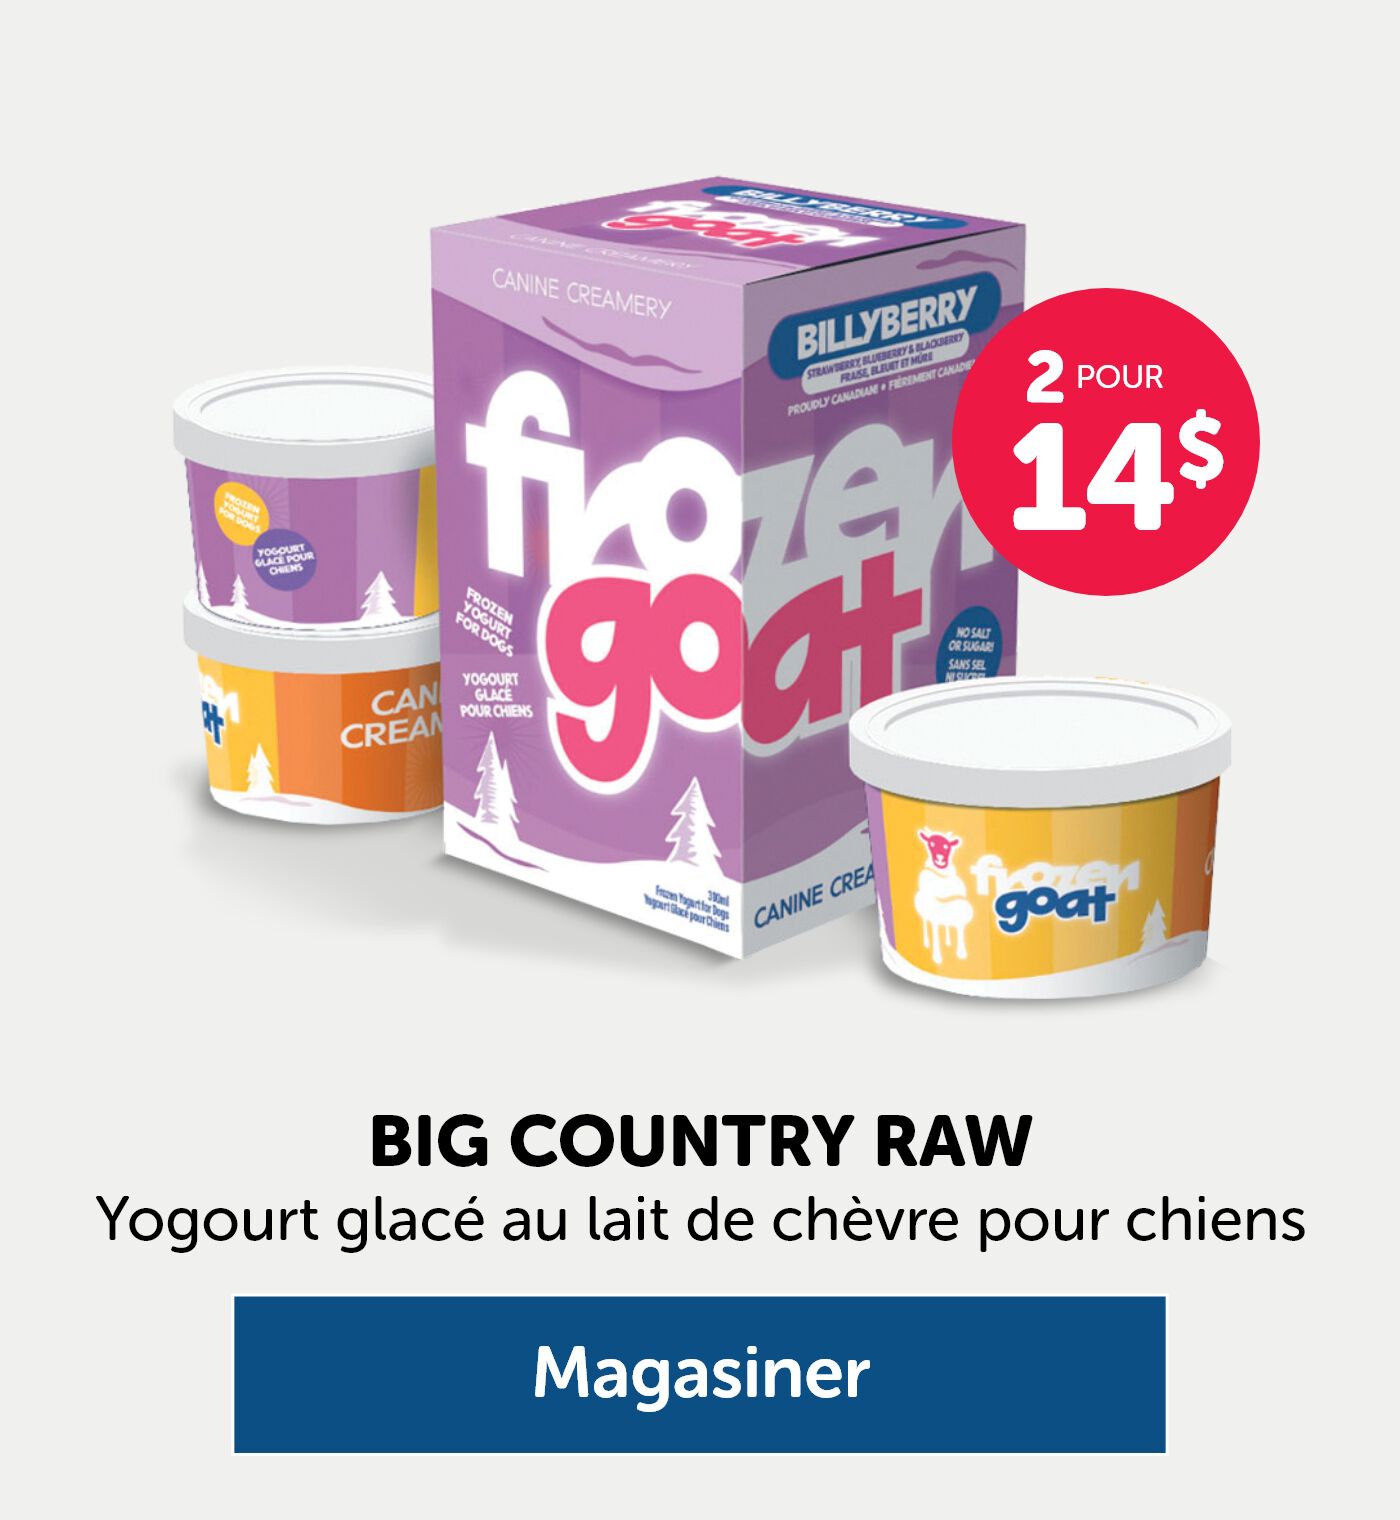 2 pour 14$ BIG COUNTRY RAW Yogourt glacé au lait de chèvre pour chiens